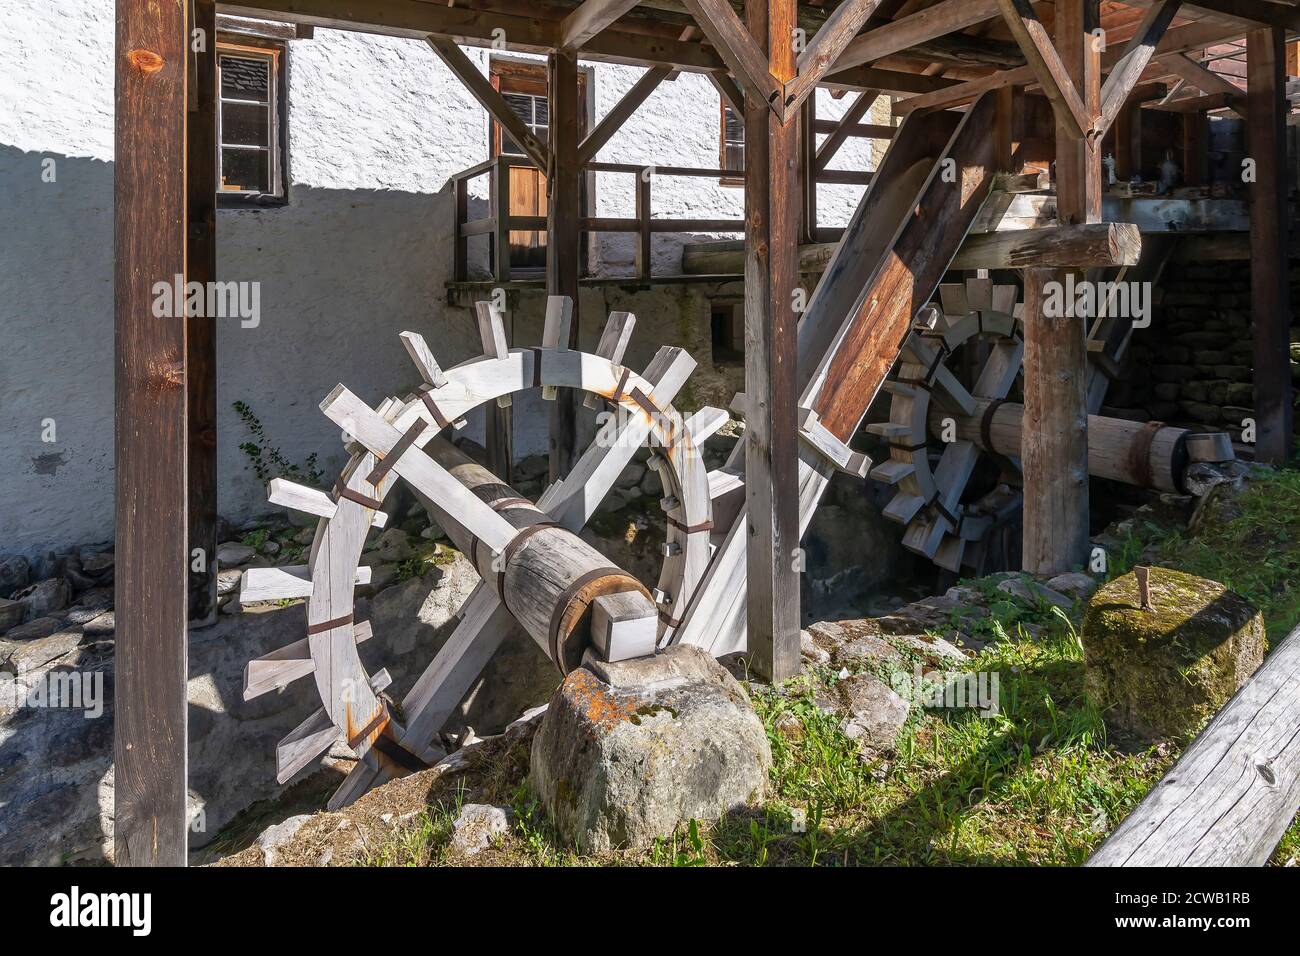 Ancien moulin de Santa Maria Val Müstair, canton des Grisons, Suisse. Musée du centre commercial Mulino Banque D'Images